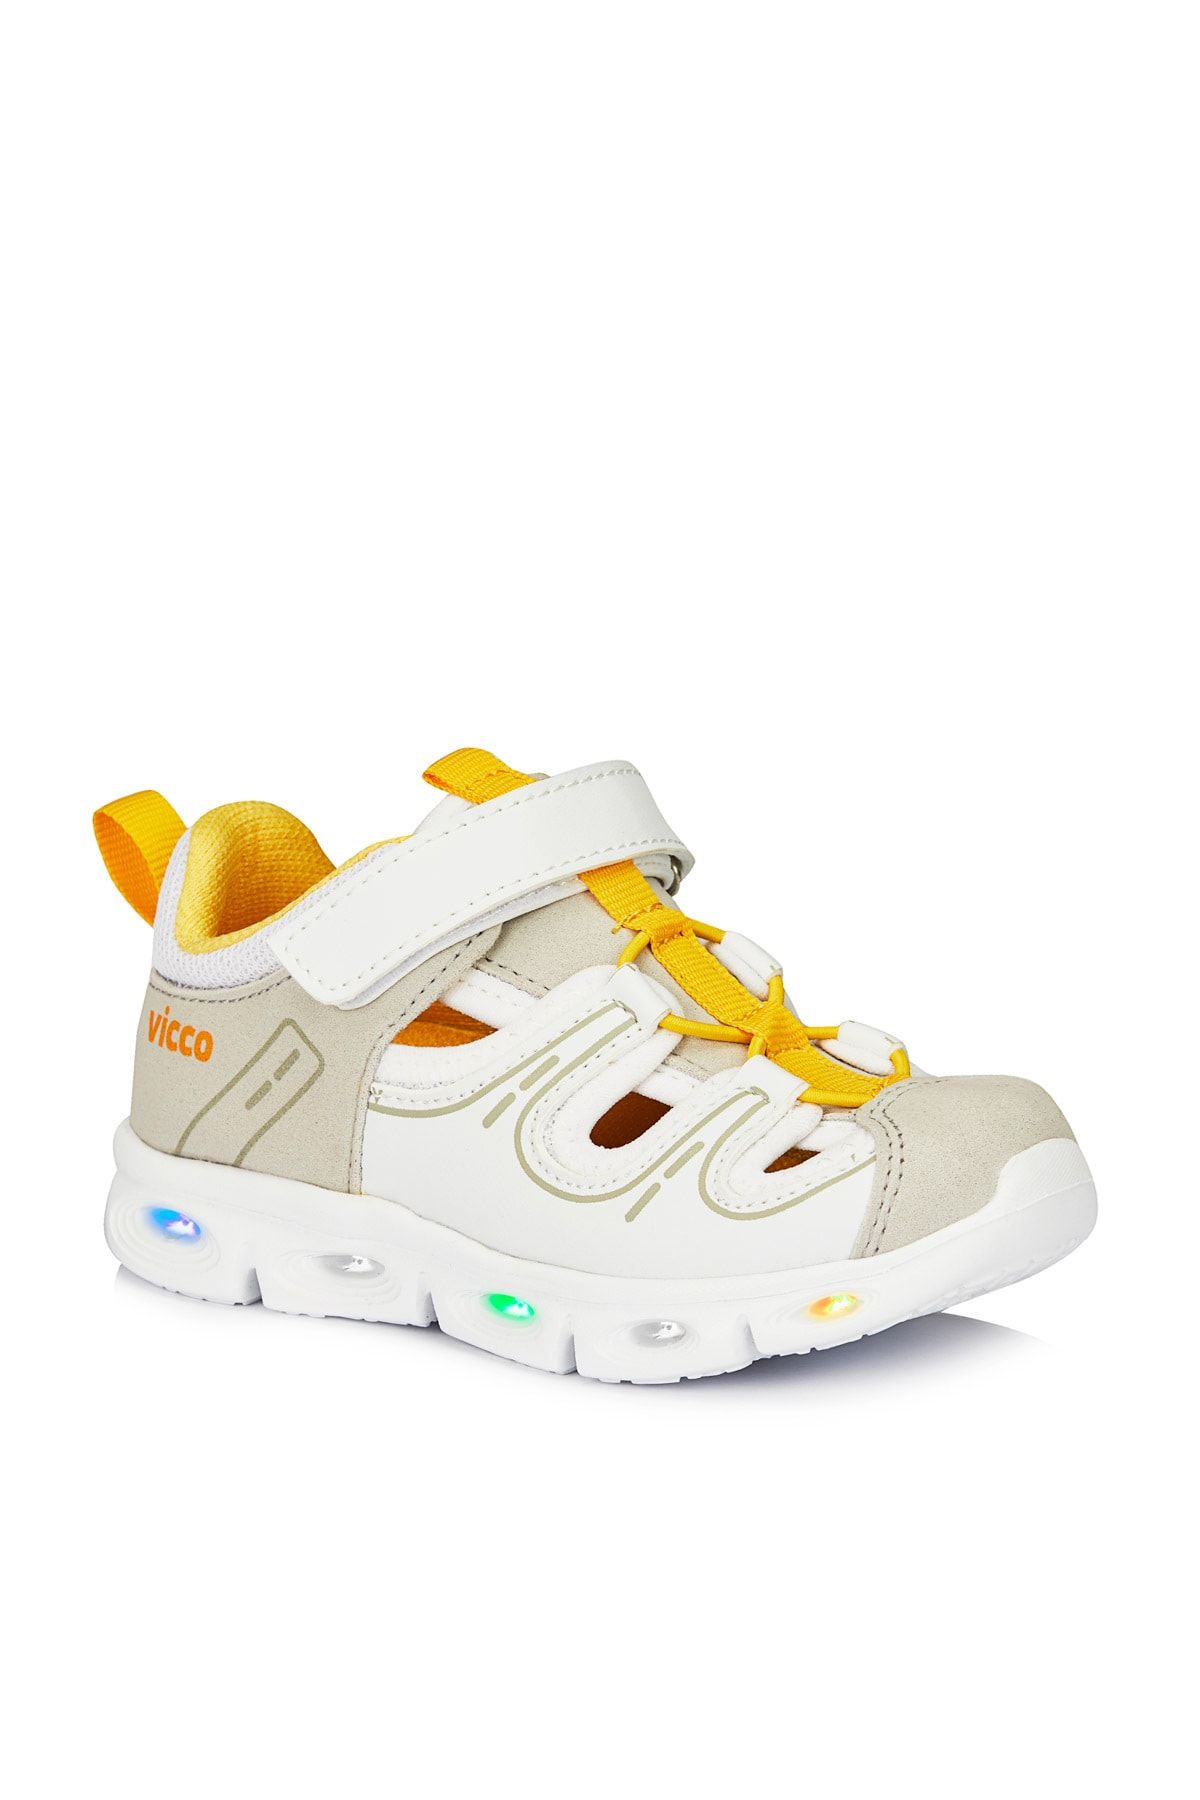 Vicco Yuki Işıklı Unisex Bebe Beyaz Spor Ayakkabı